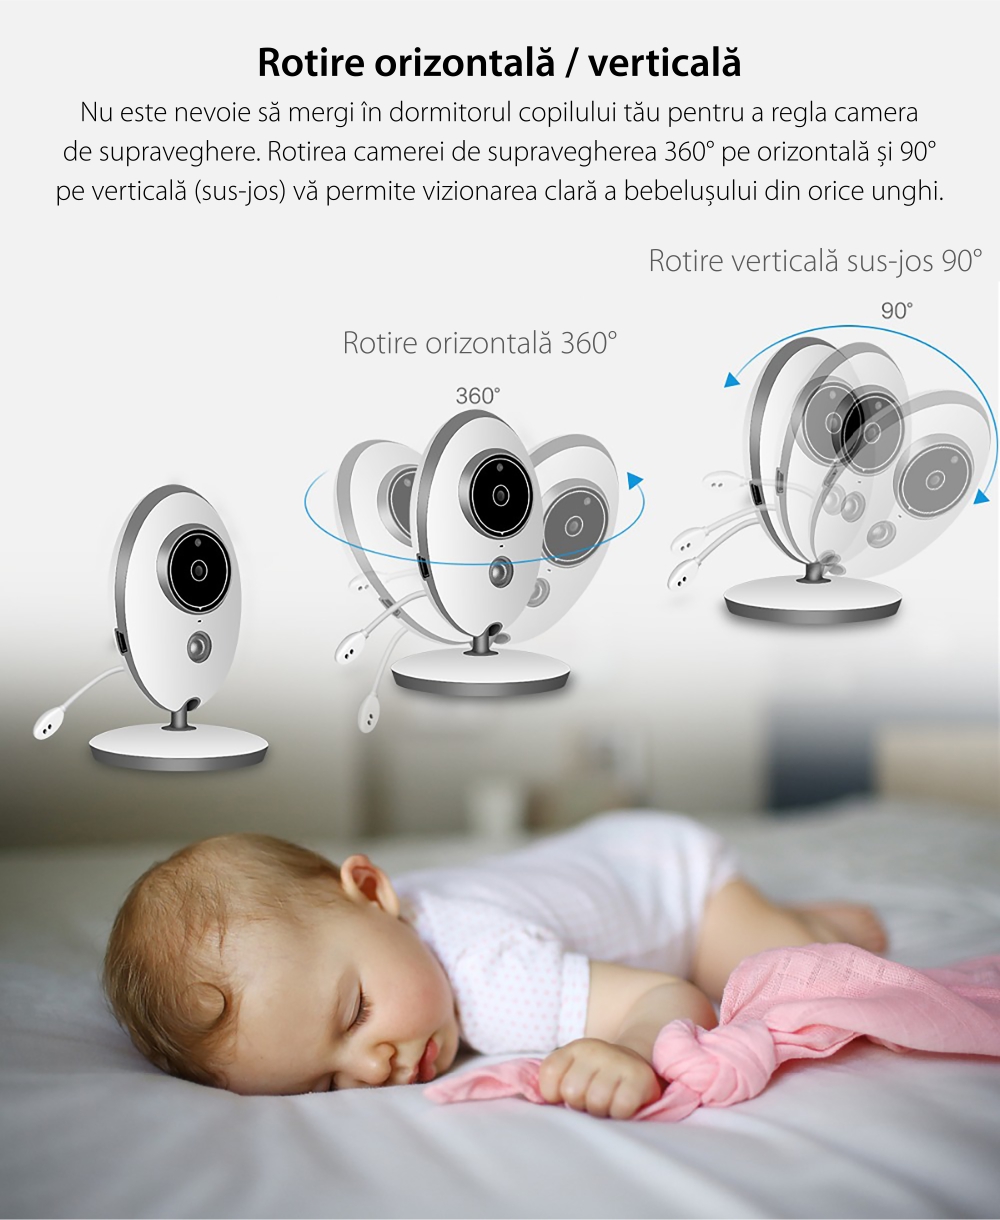 Baby Monitor Wireless VB605, Monitorizare Audio – Video, Monitorizare temperatura, Comunicare bidirectionala, Cantece de leagan, Night Vision, Baterie incorporata